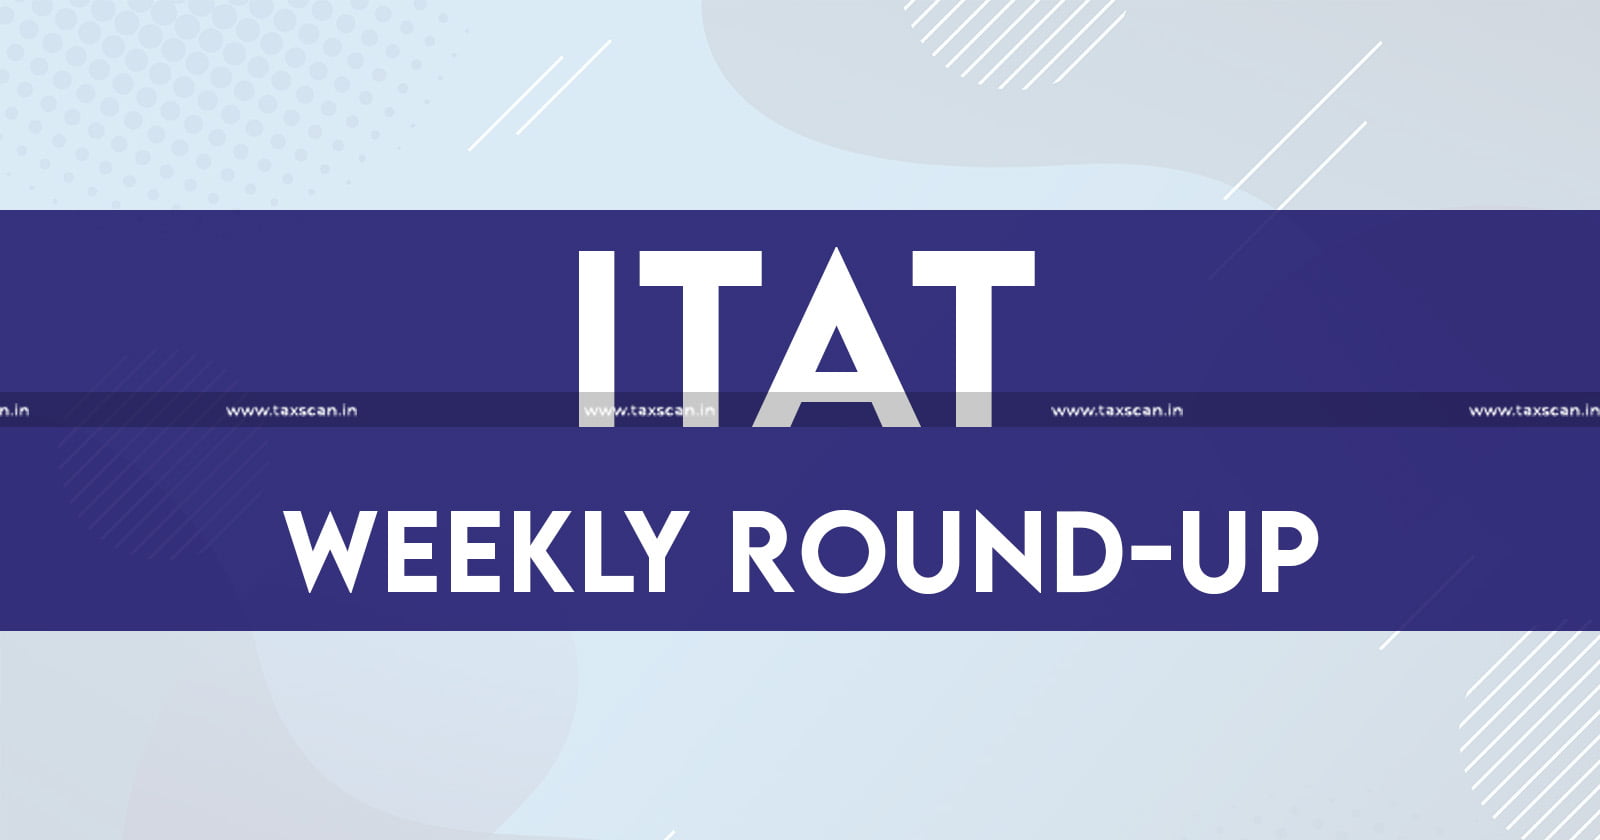 ITAT - Income tax - Income tax news - ITAT news analysis - Tax tribunal updates - taxscan